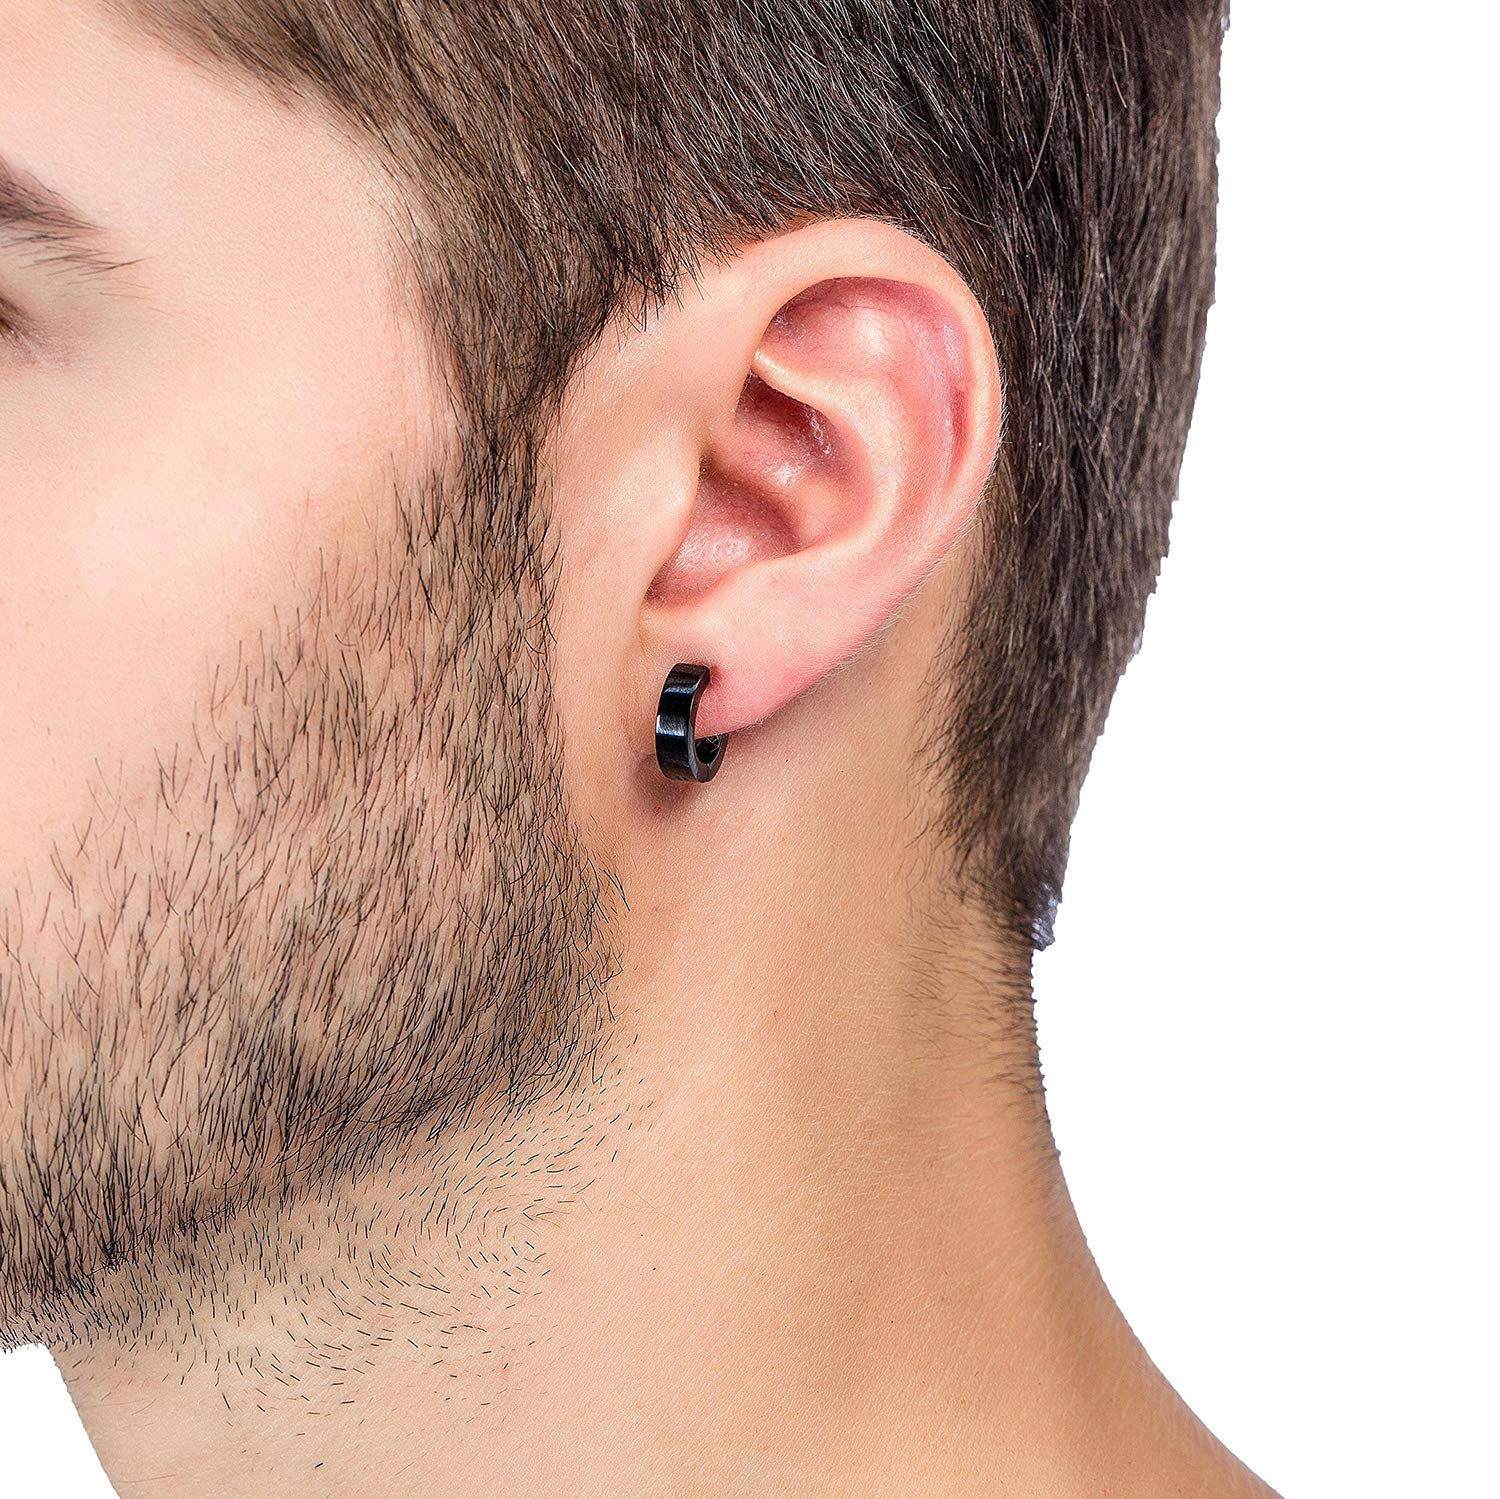 RIOSO Magnetic Stud Earrings for Men Women Stainless Steel Hoop Cross Non Piercing Fake Gauges Earring Black CZ Hypoallergenic Magnet Earring Set